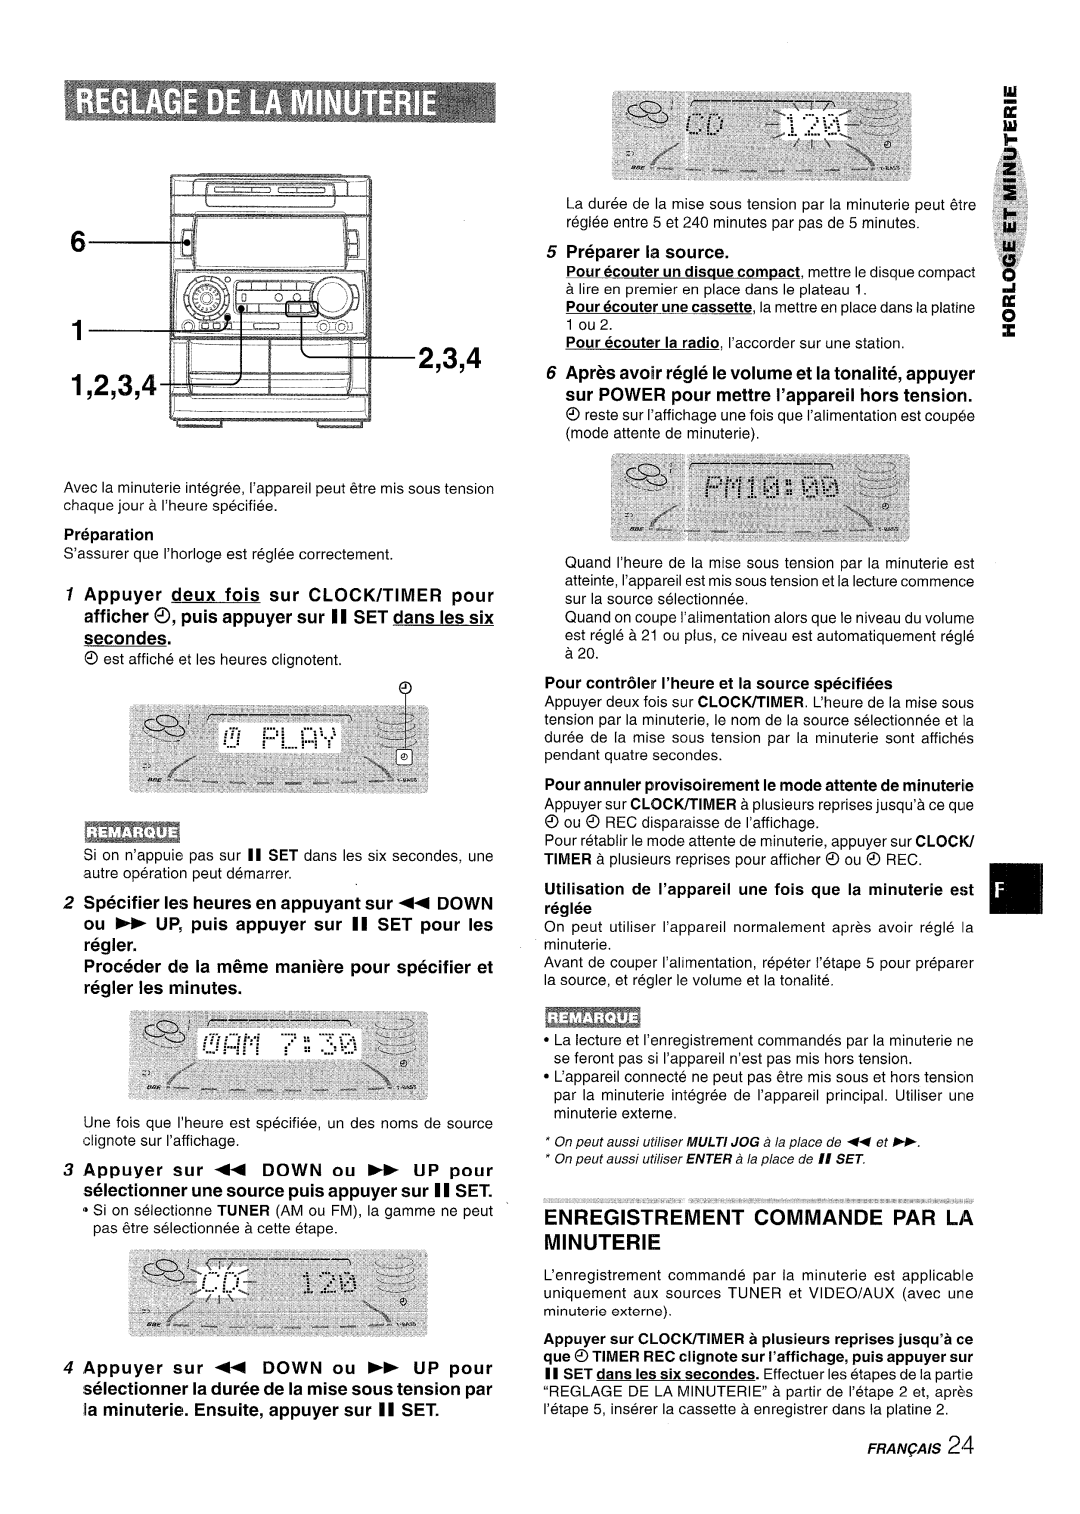 Aiwa NSX-A909 manual 2,3,4, Enregistrement, Commande, Par La, Minuterie, Preparer la source, ”,, .,,” 